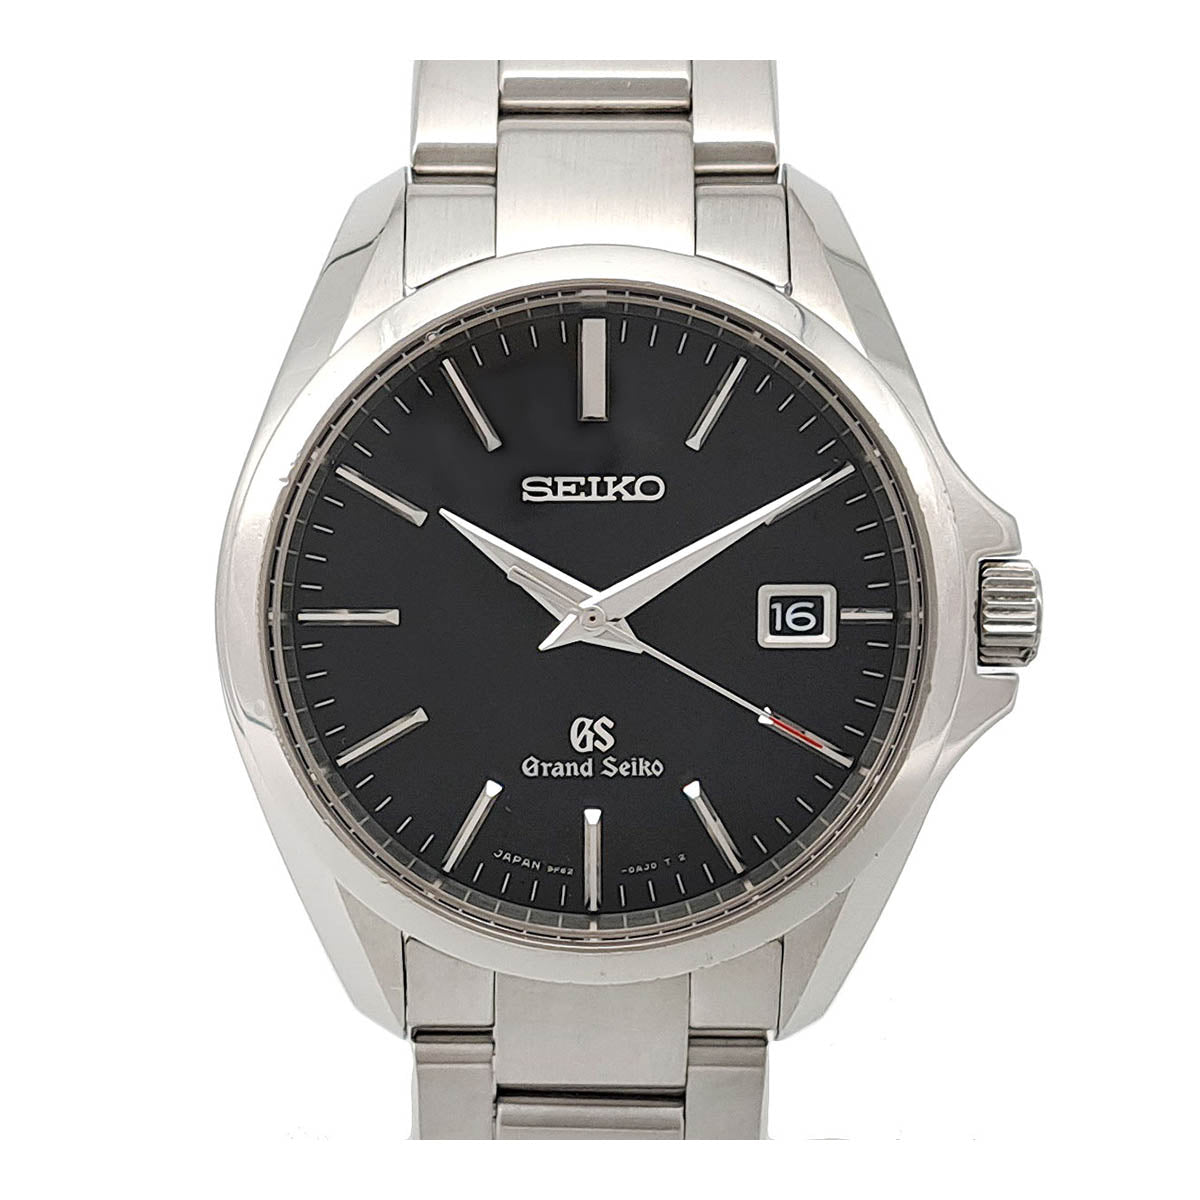 SEIKO Grand Seiko Men's Watch SBGX083, Quartz Stainless Steel - Preowned SBGX083